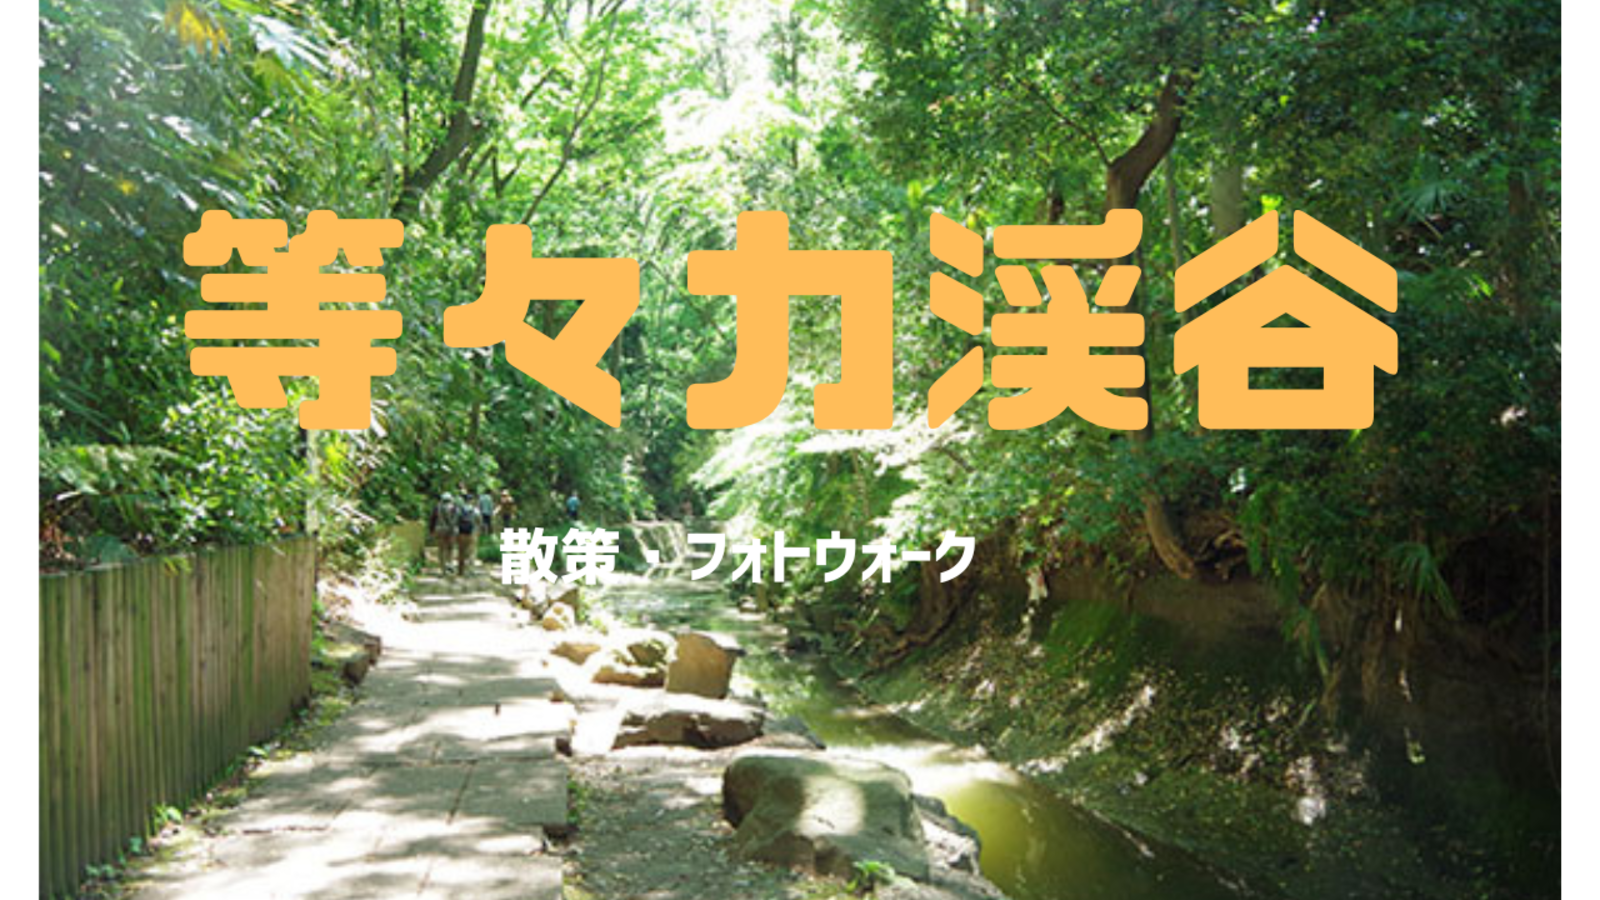 【ソロ参加歓迎】東京唯一の渓谷をみんなで散策して堪能しよう！【等々力渓谷】